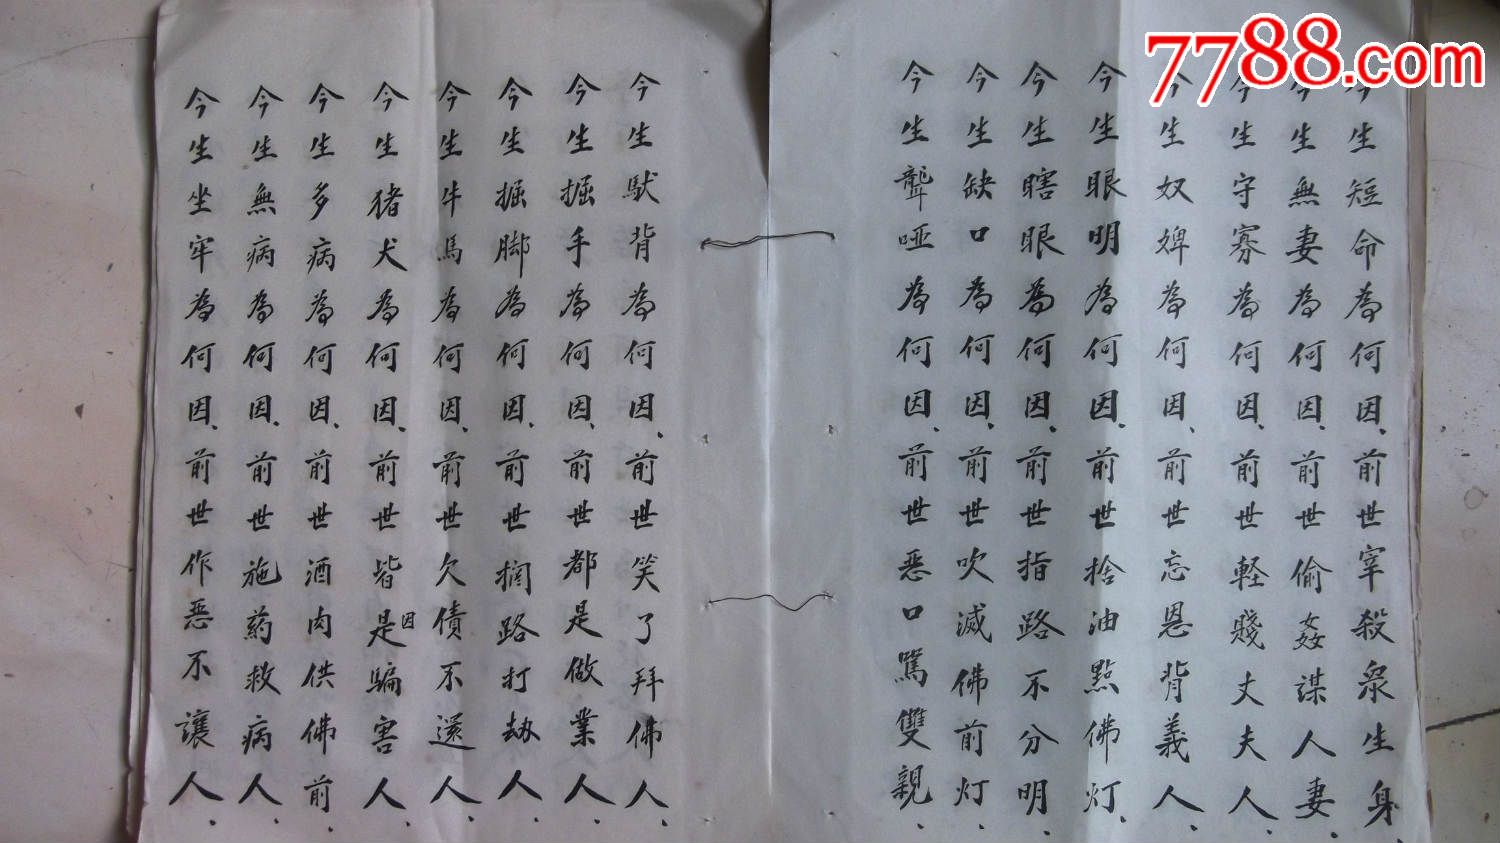 手抄本佛经三世因果经,字写的很好,共14面有字